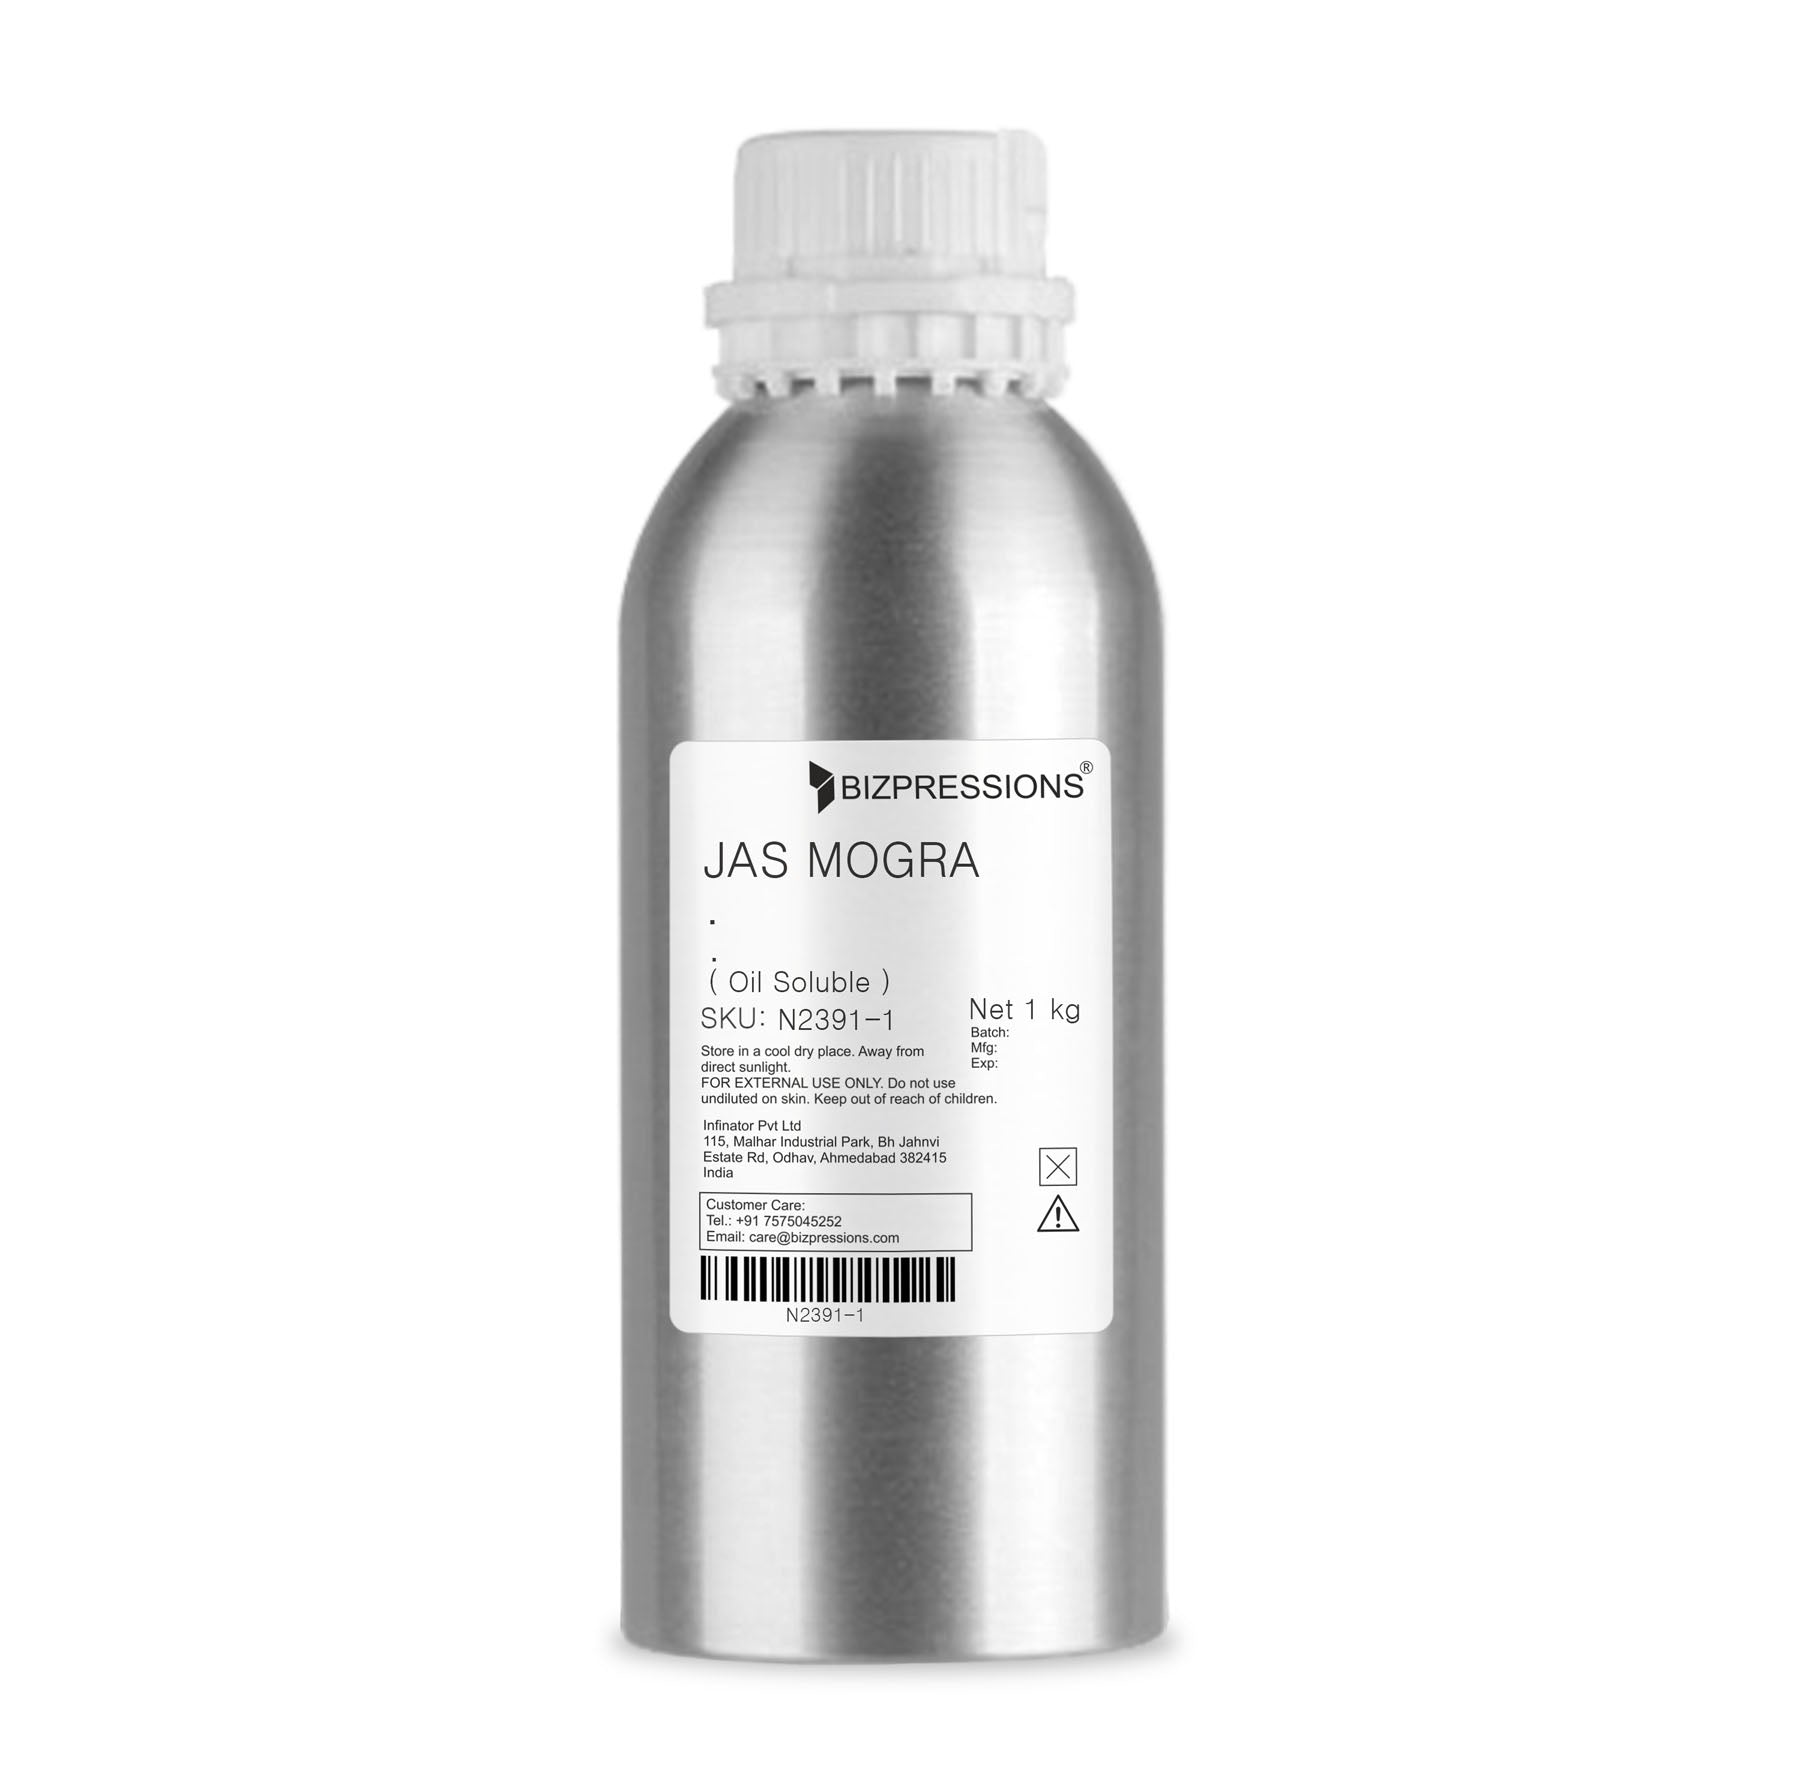 JAS MOGRA - Fragrance ( Oil Soluble ) - 1 kg